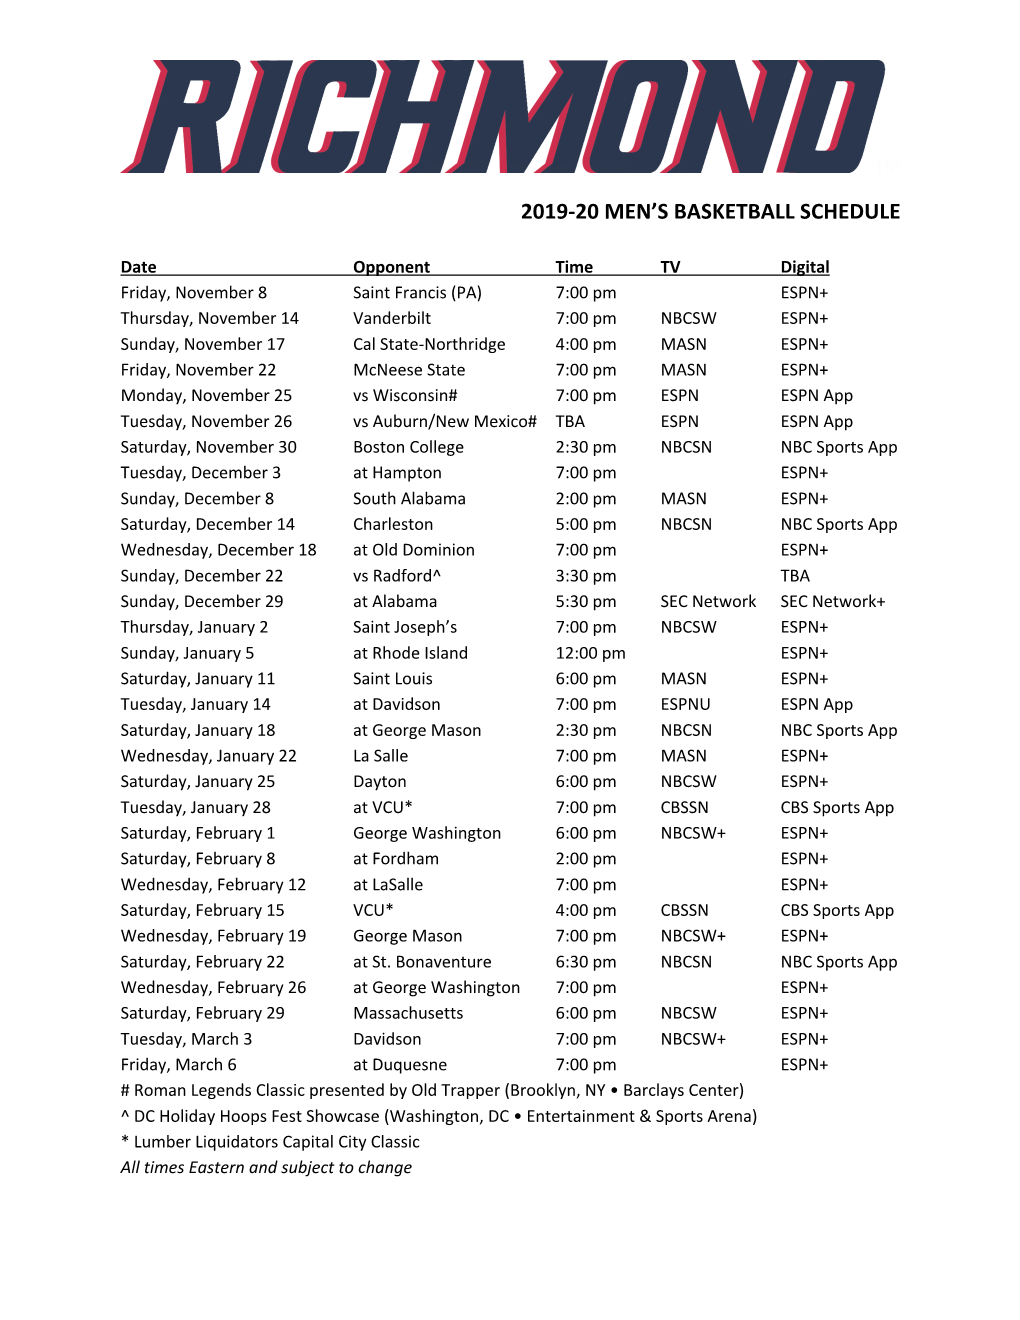 2019-20 Men's Basketball Schedule